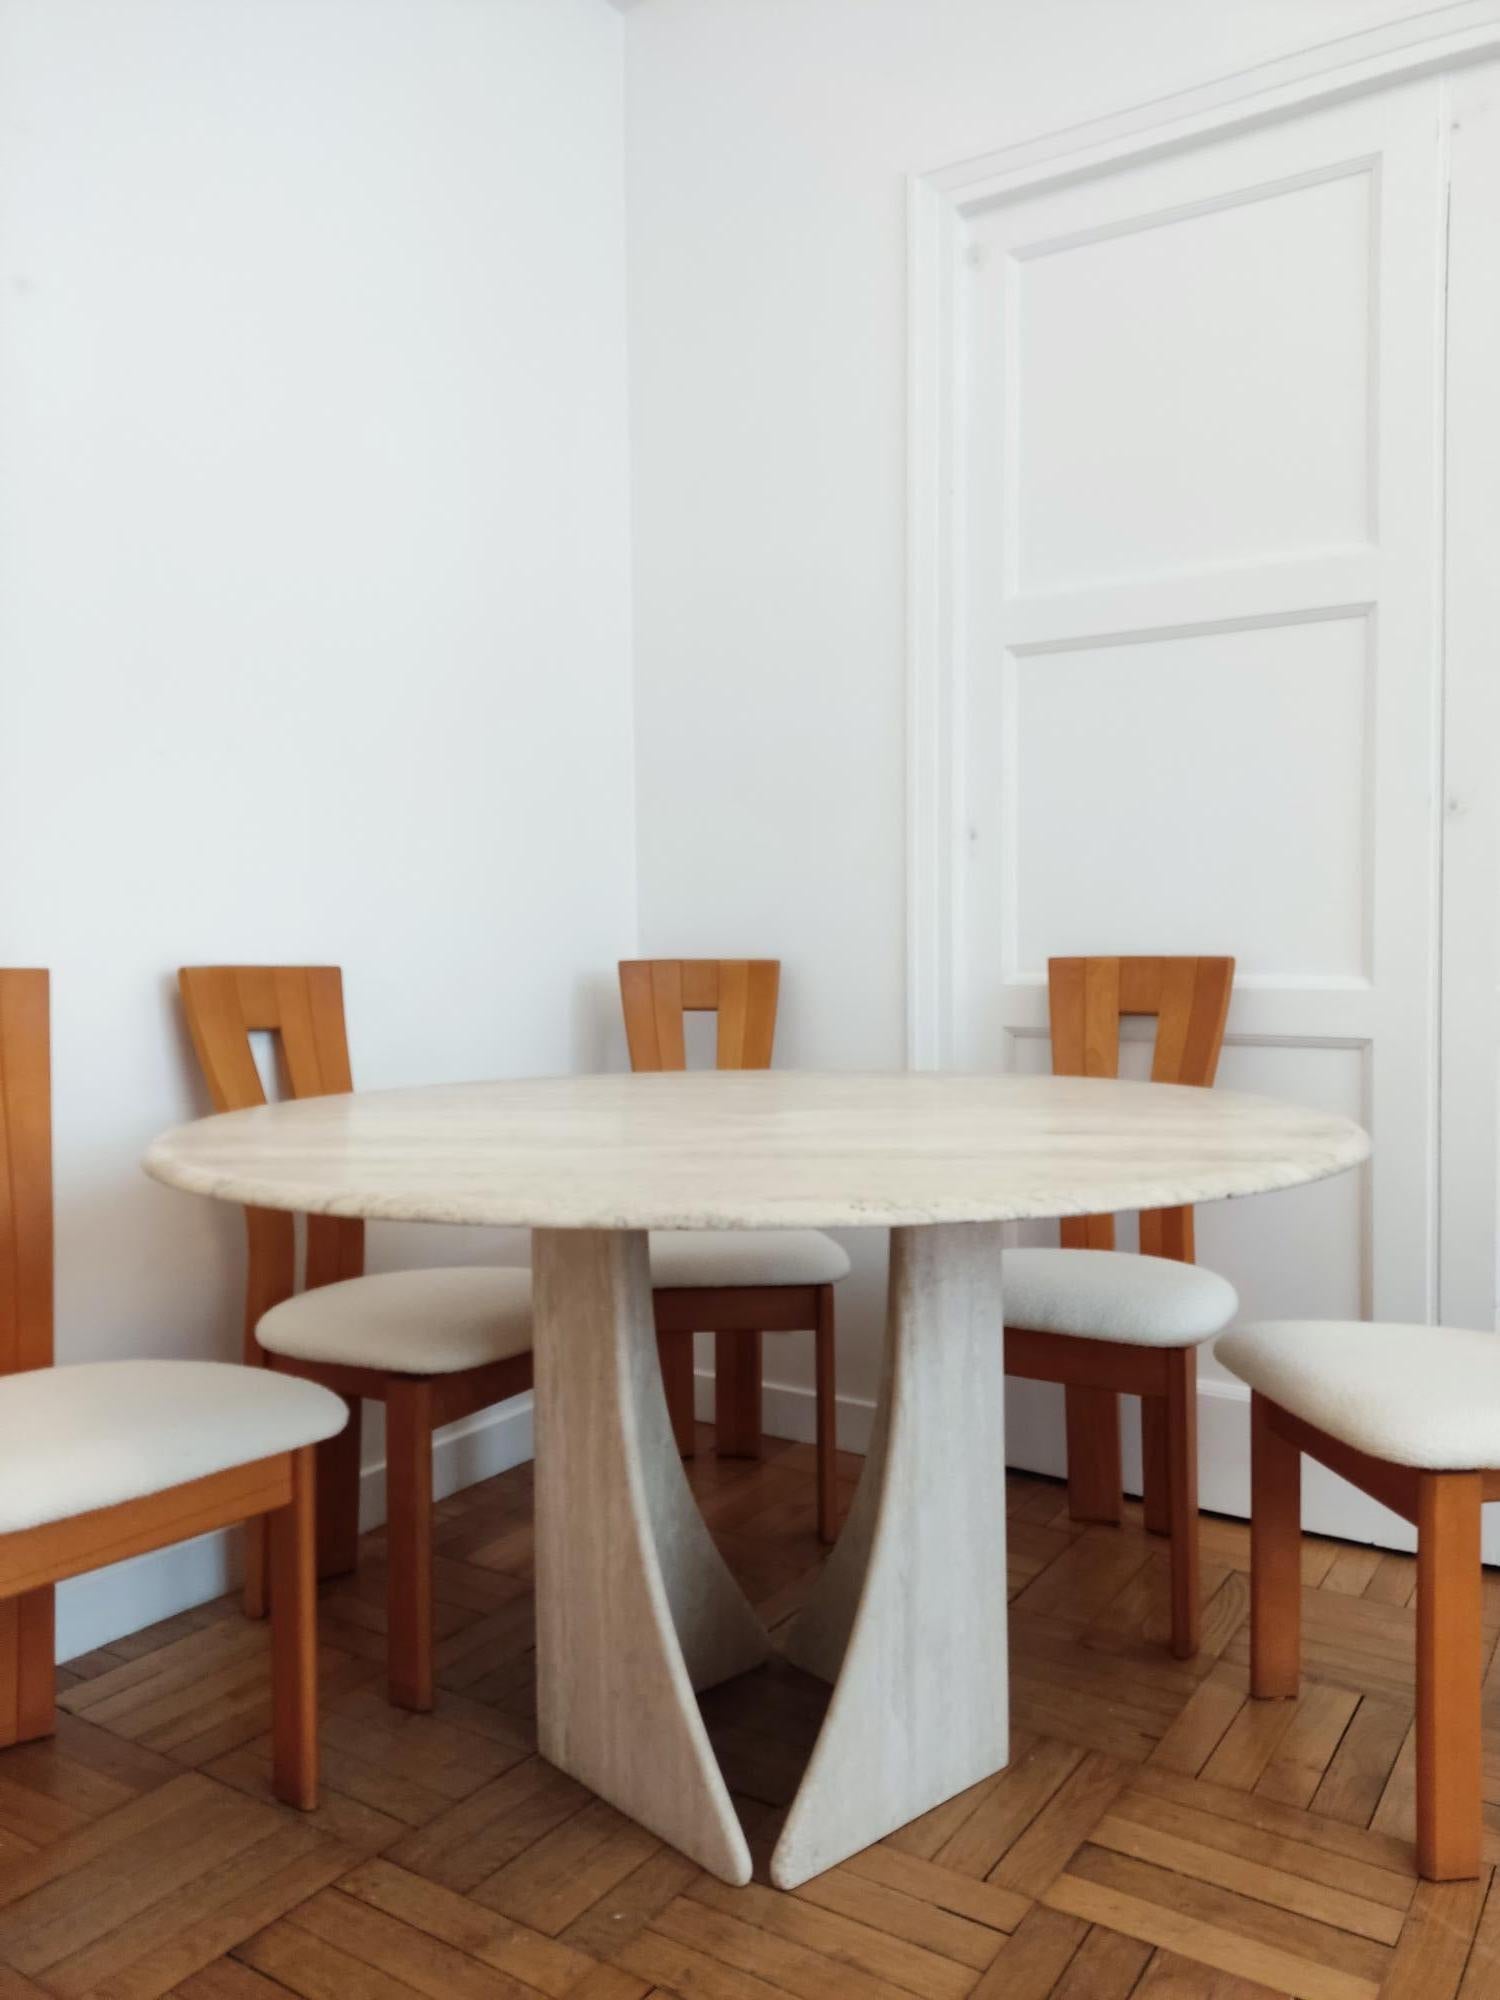 Seltener runder Travertin-Esszimmertisch mit hübscher Maserung und Spiralbein mit 6 Stühlen aus der Tischlerei Seltz, in der Pierre Chapo arbeitete. Die Stühle sind in einem ecrufarbenen Boucle von Maison LeLièvre restauriert